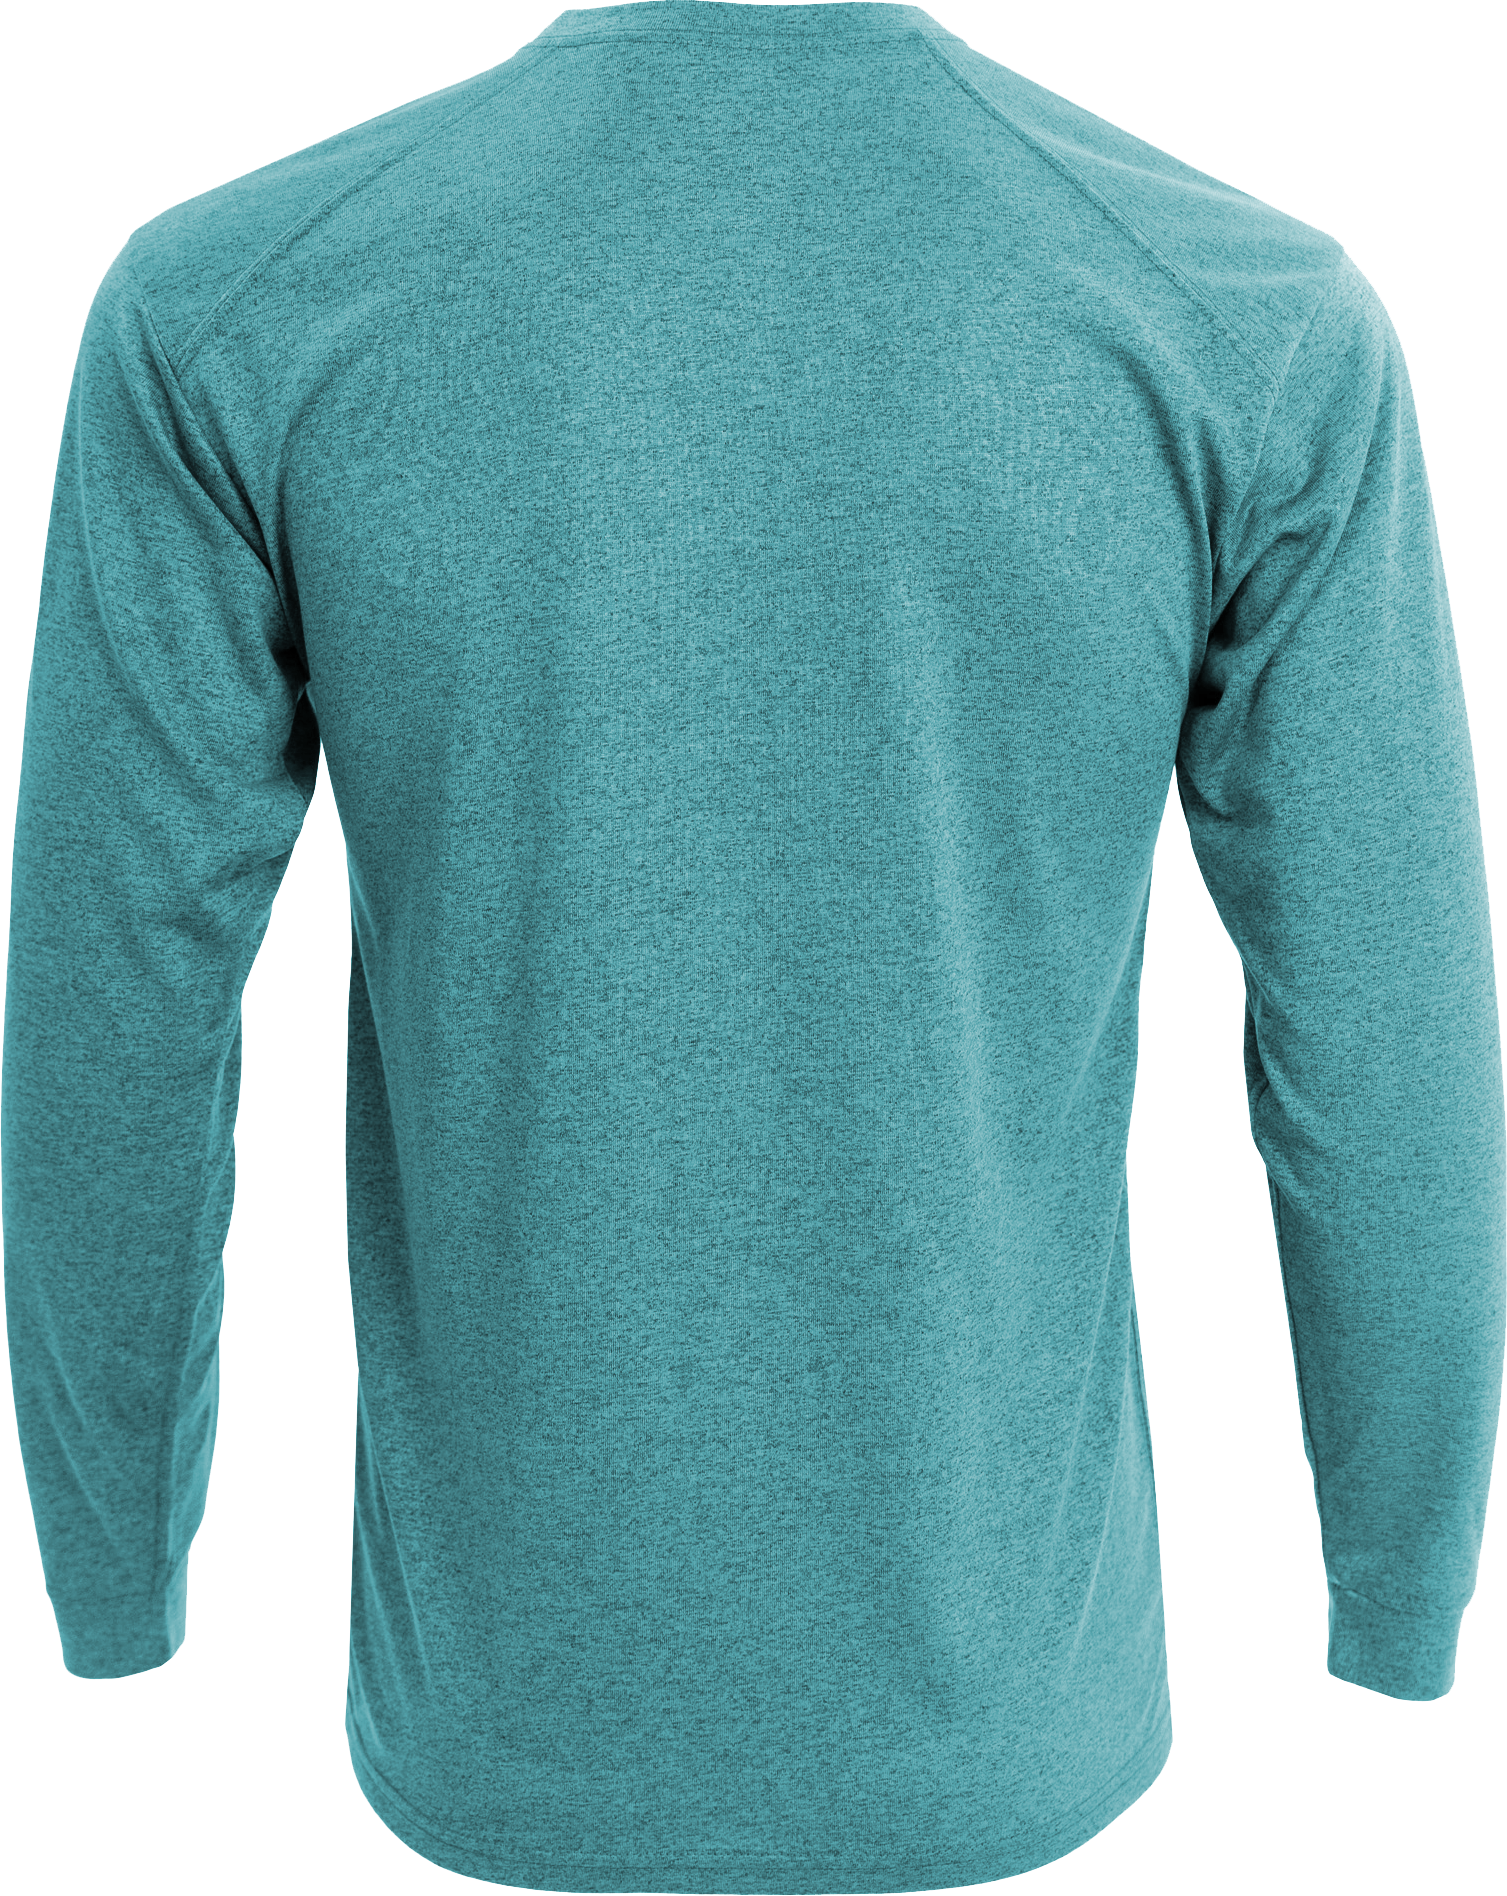 RD1001 - Sport Long Sleeve T-Shirt